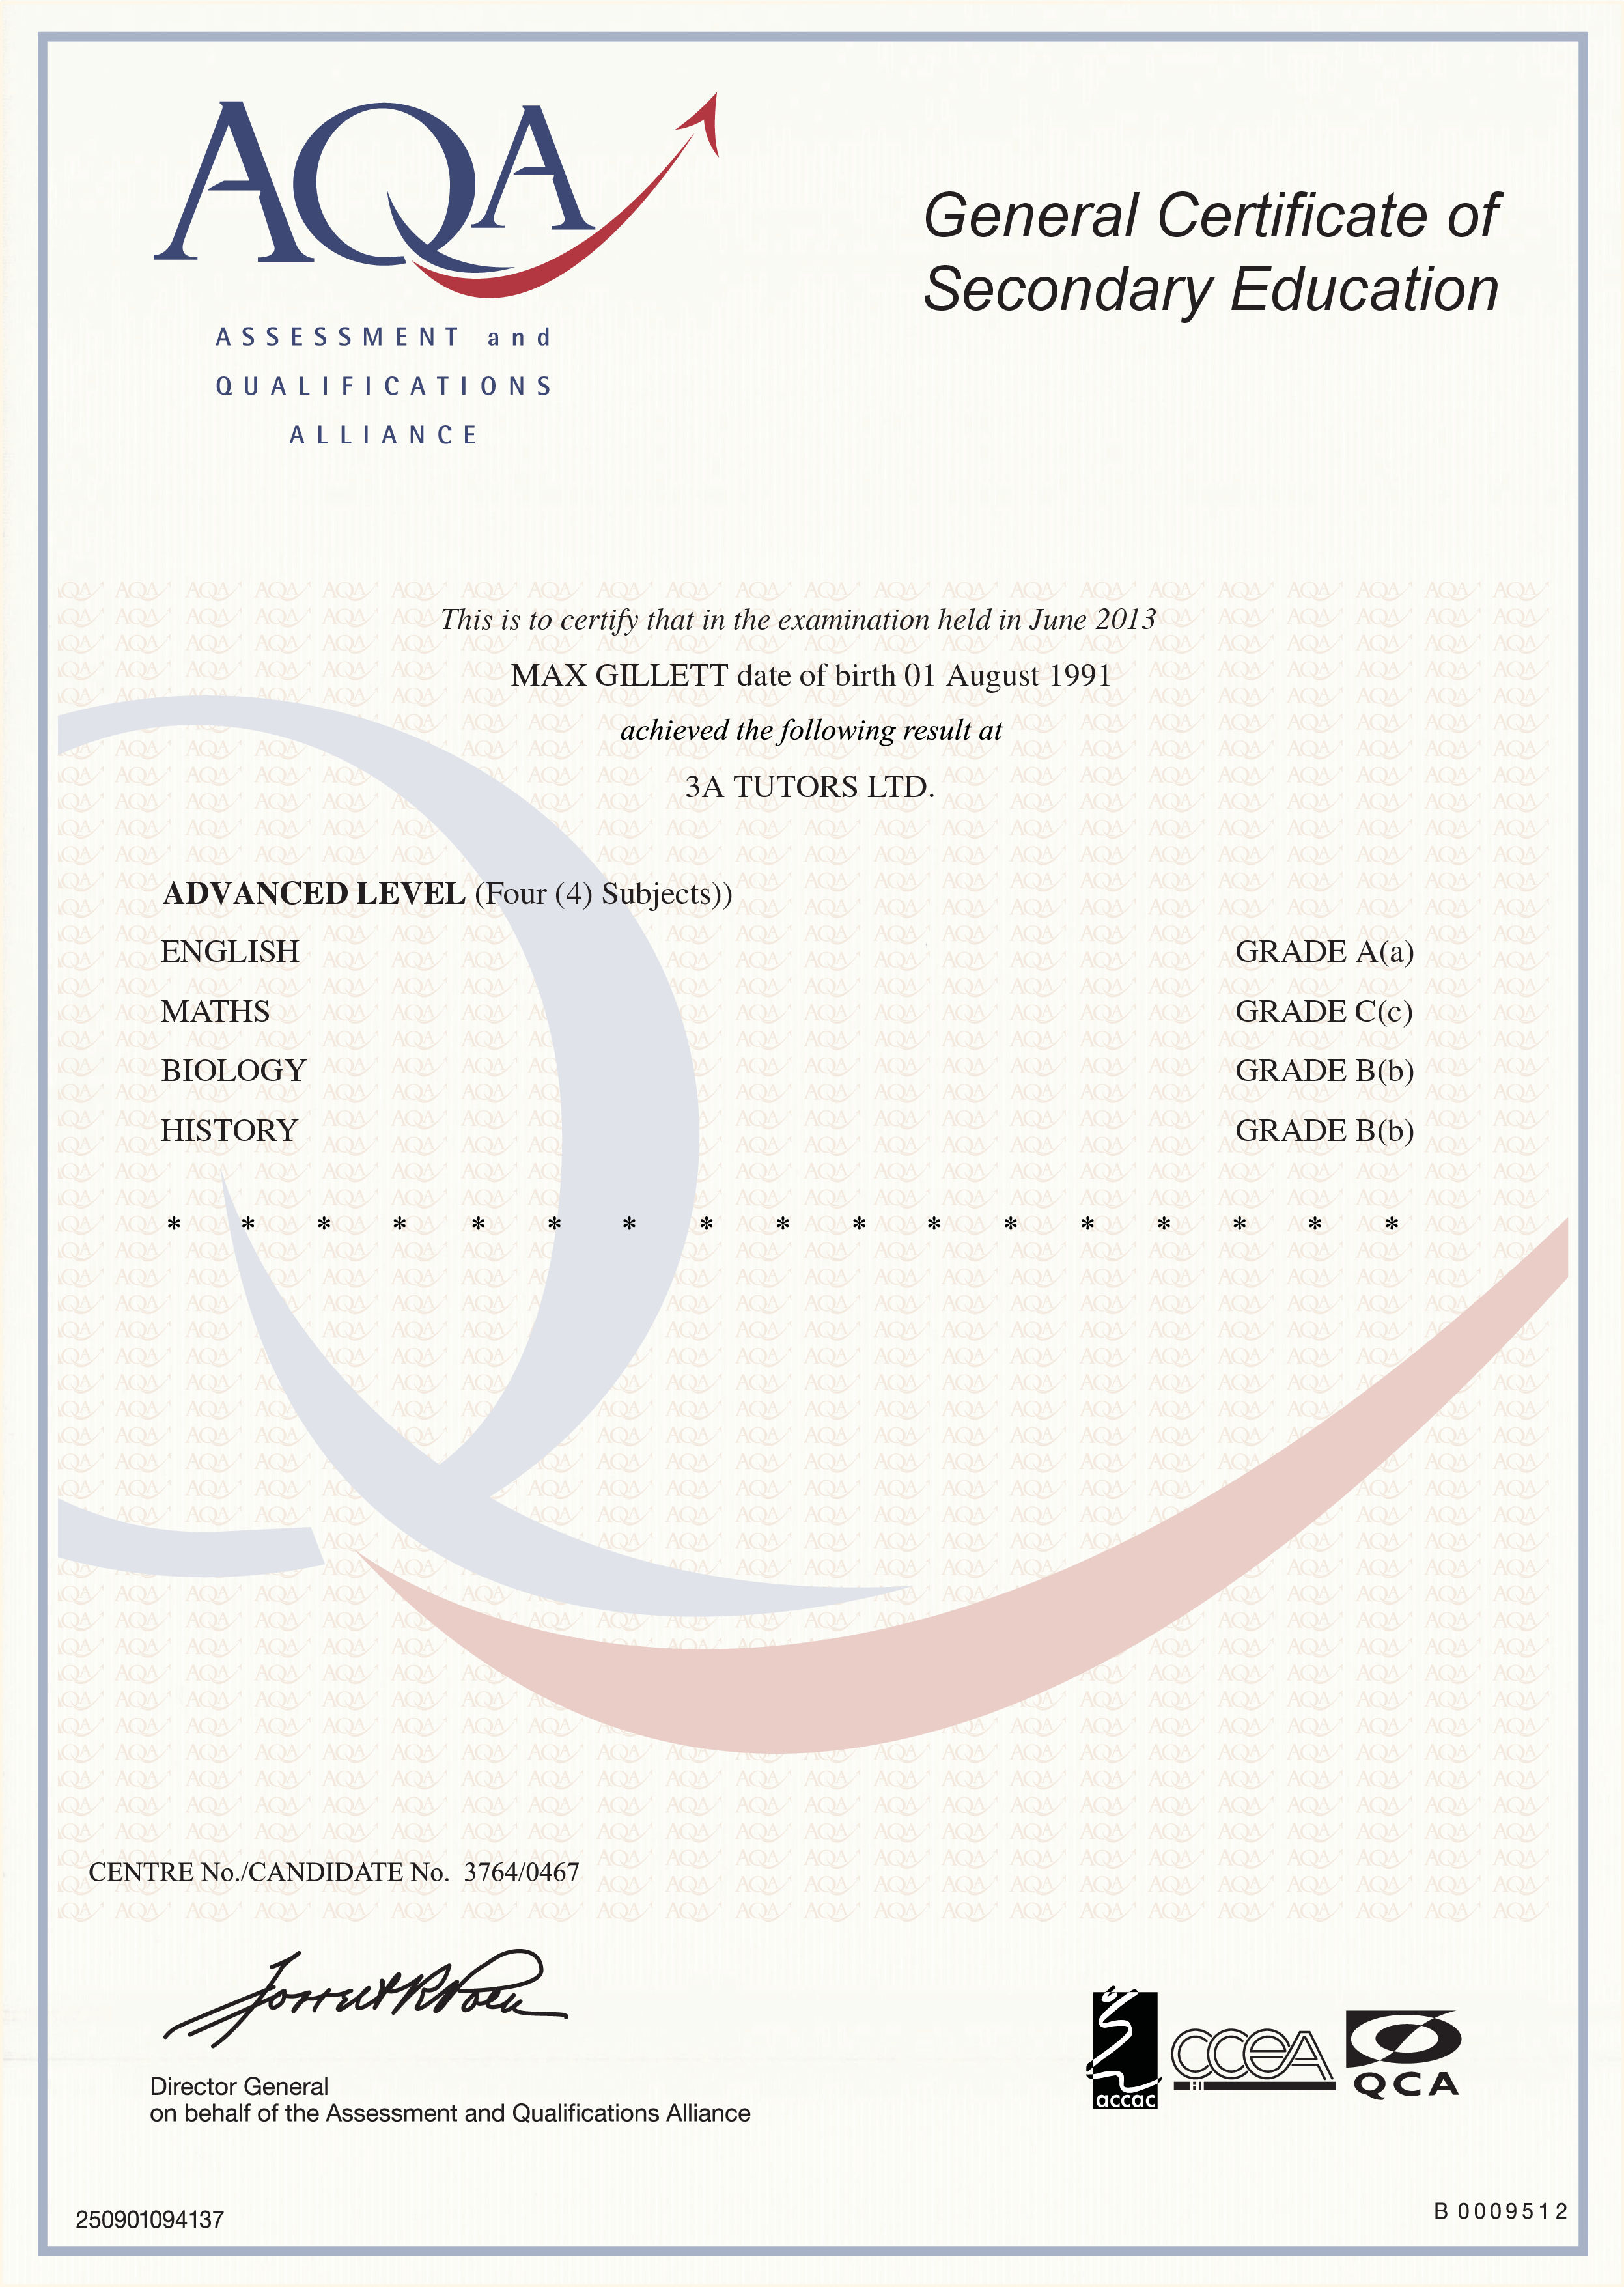 Gcse Certificate Template